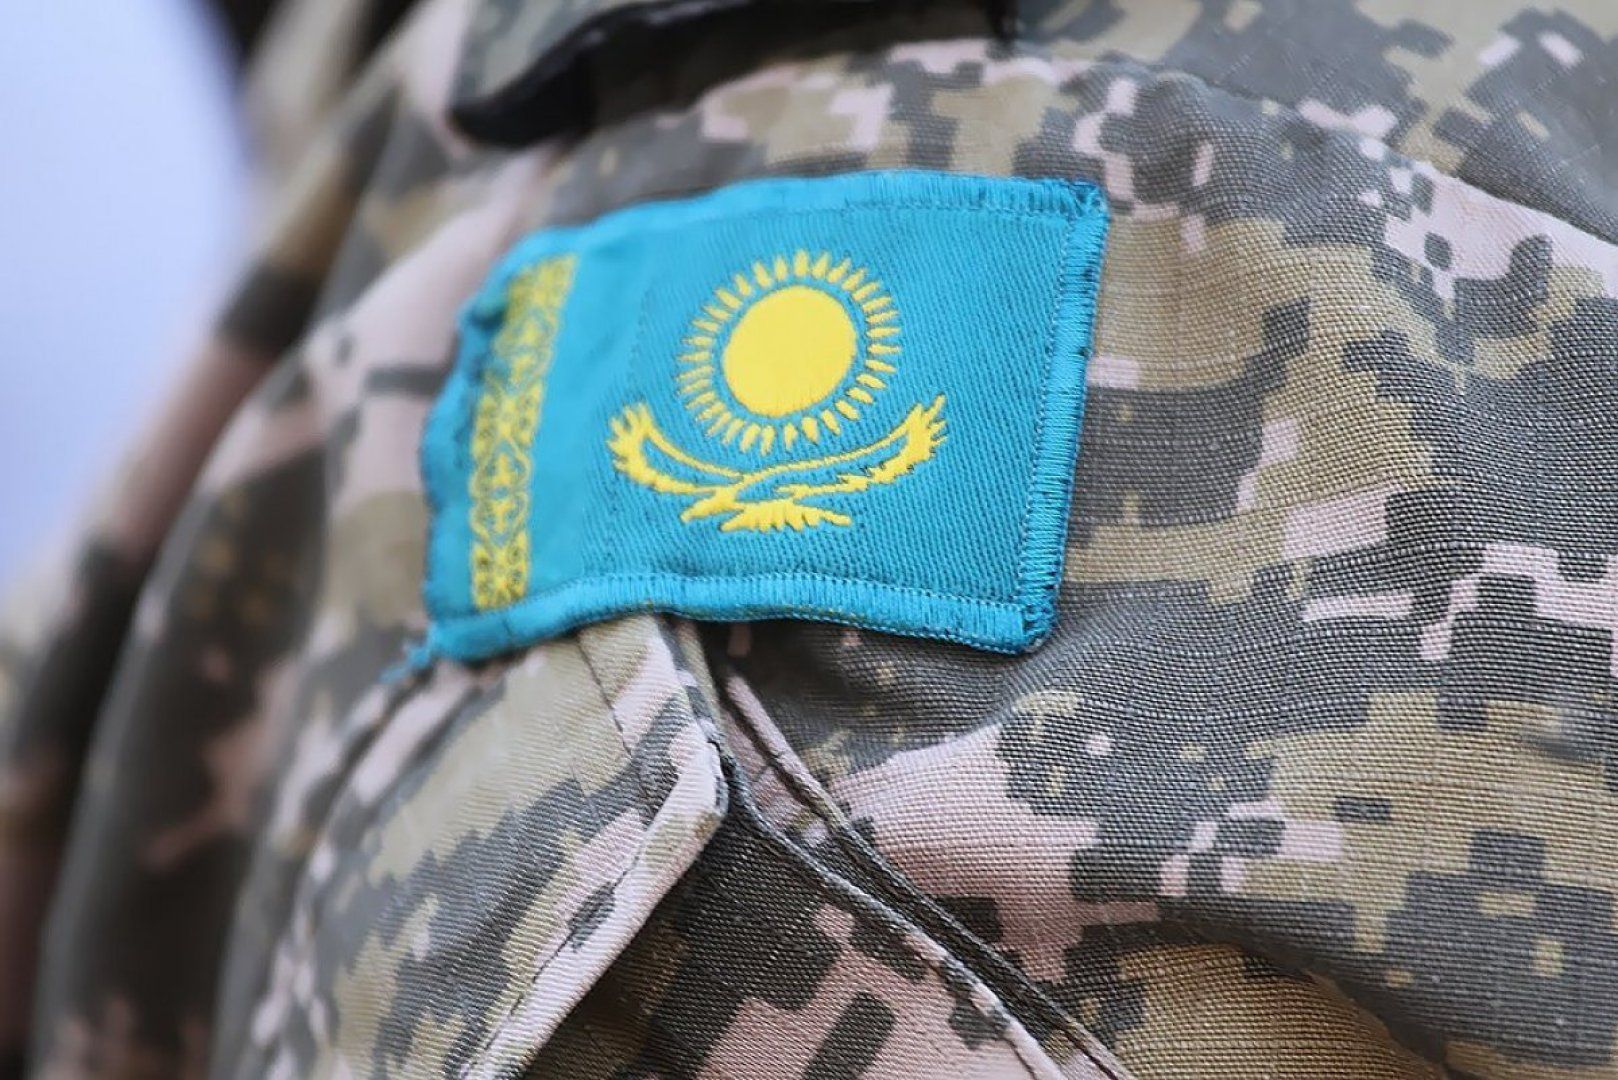 солдат казахстана